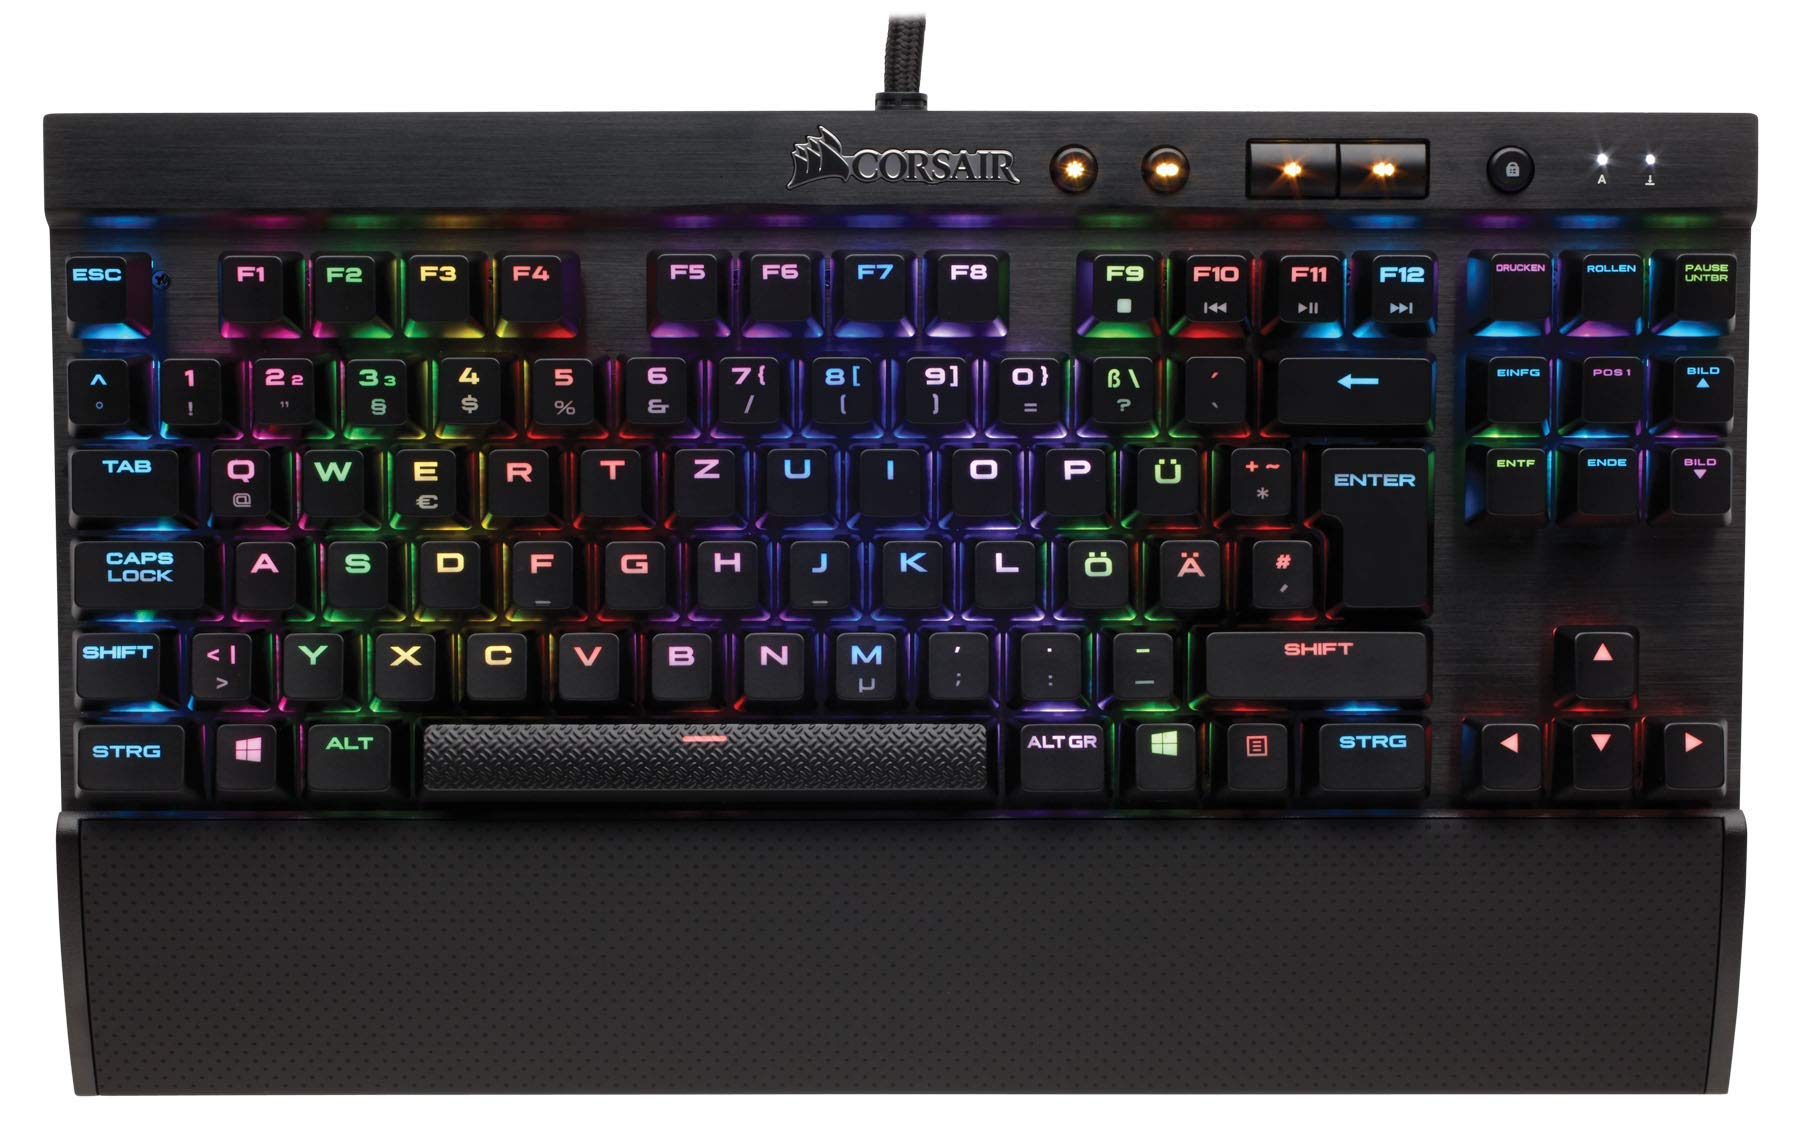 Corsair K65 Rapidfire Mechanische Gaming Tastatur (Cherry MX Speed: Schnell und Hochpräzise, Multi-Color RGB Beleuchtung, Qwertz) schwarz